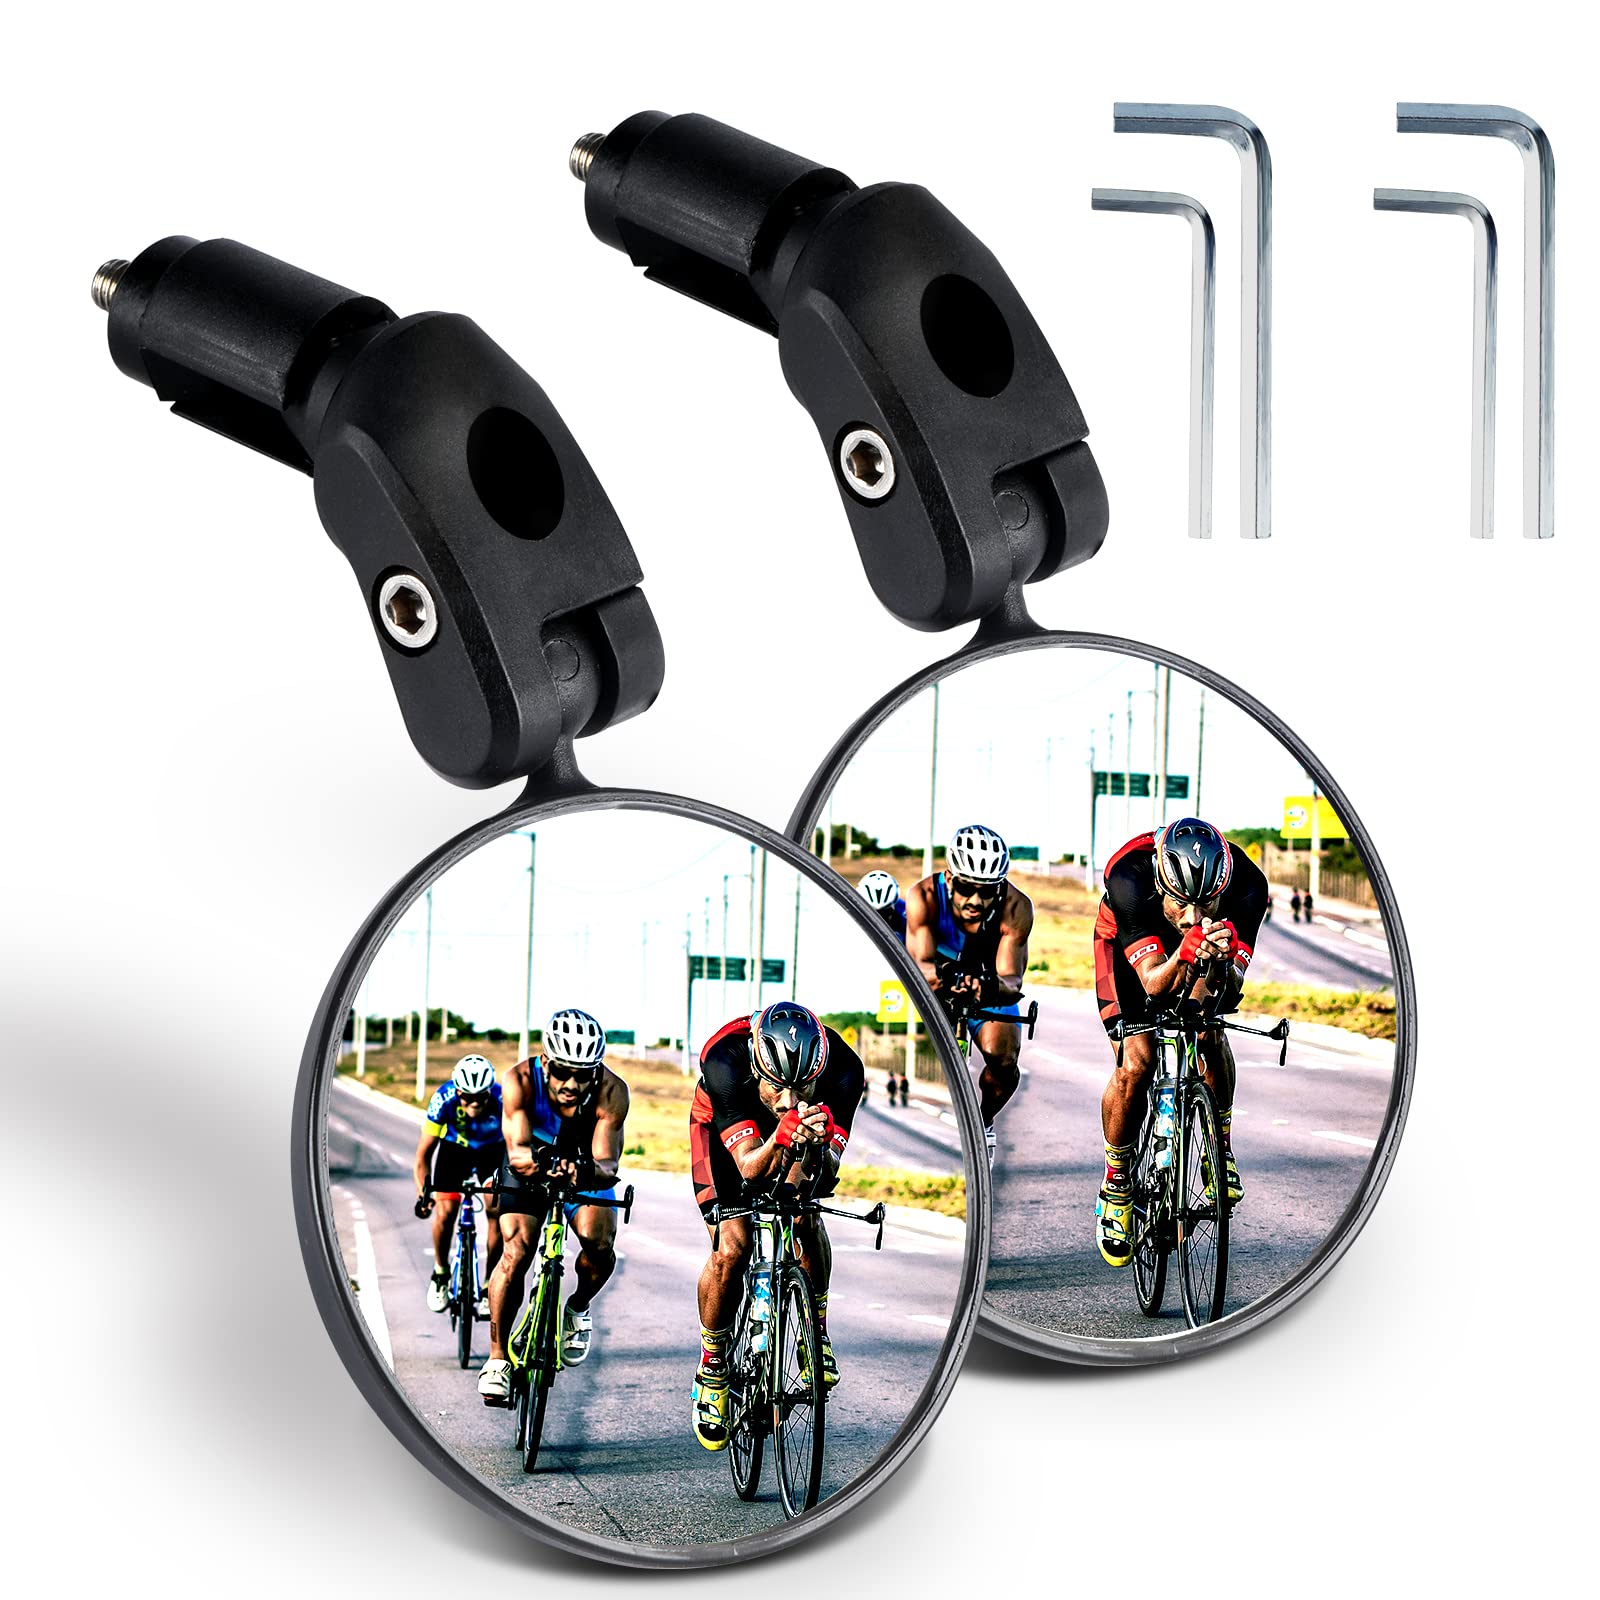 2 Stück Fahrradspiegel Rückspiegel,HD 360° Drehbar & Klappbar Fahrrad Rückspiegel für Lenker 17.4-22 mm,Fahrrad Spiegel für Rennräder,Mountainbik,E-Bike (Schwarz) von JEEZAO